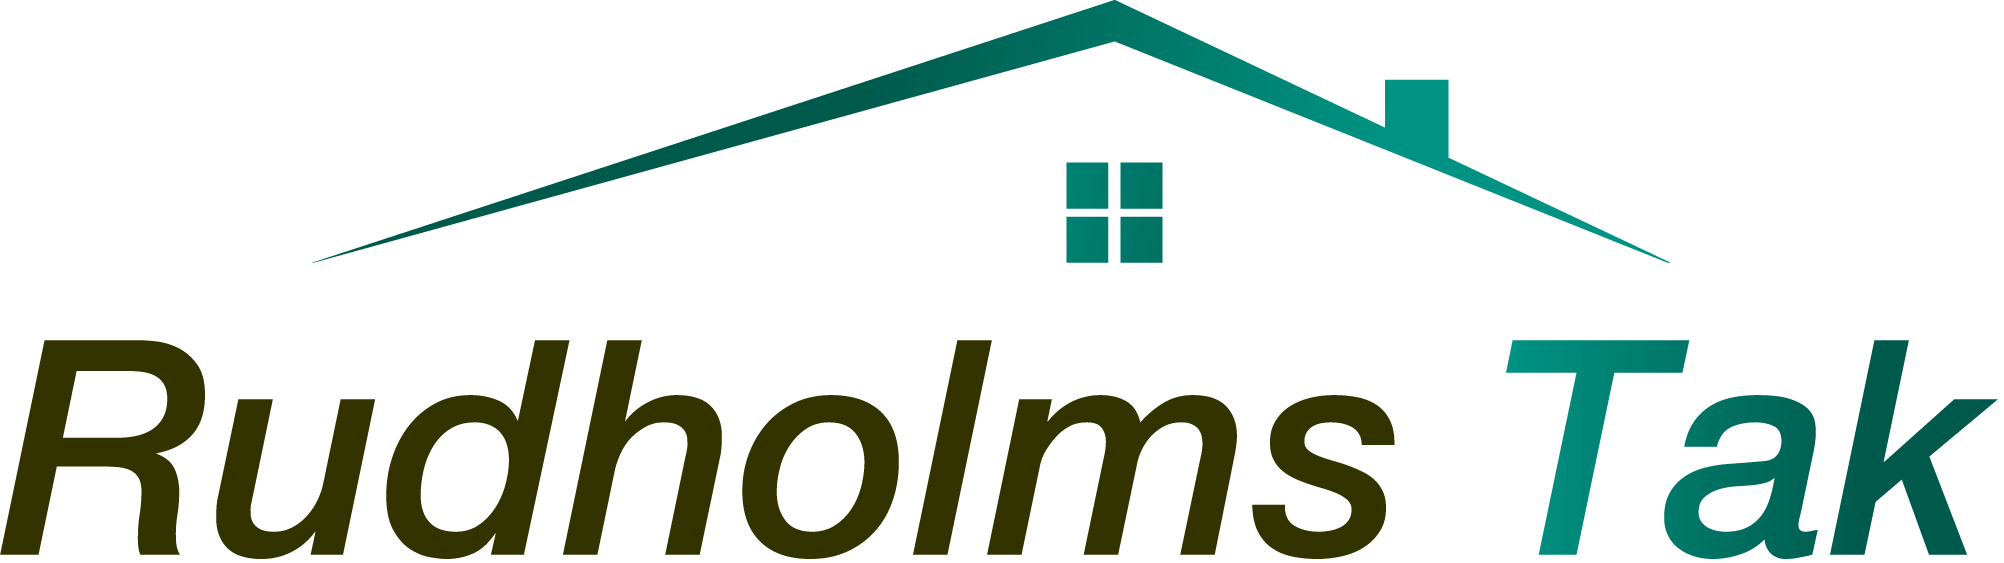 Rudholms Tak Logo